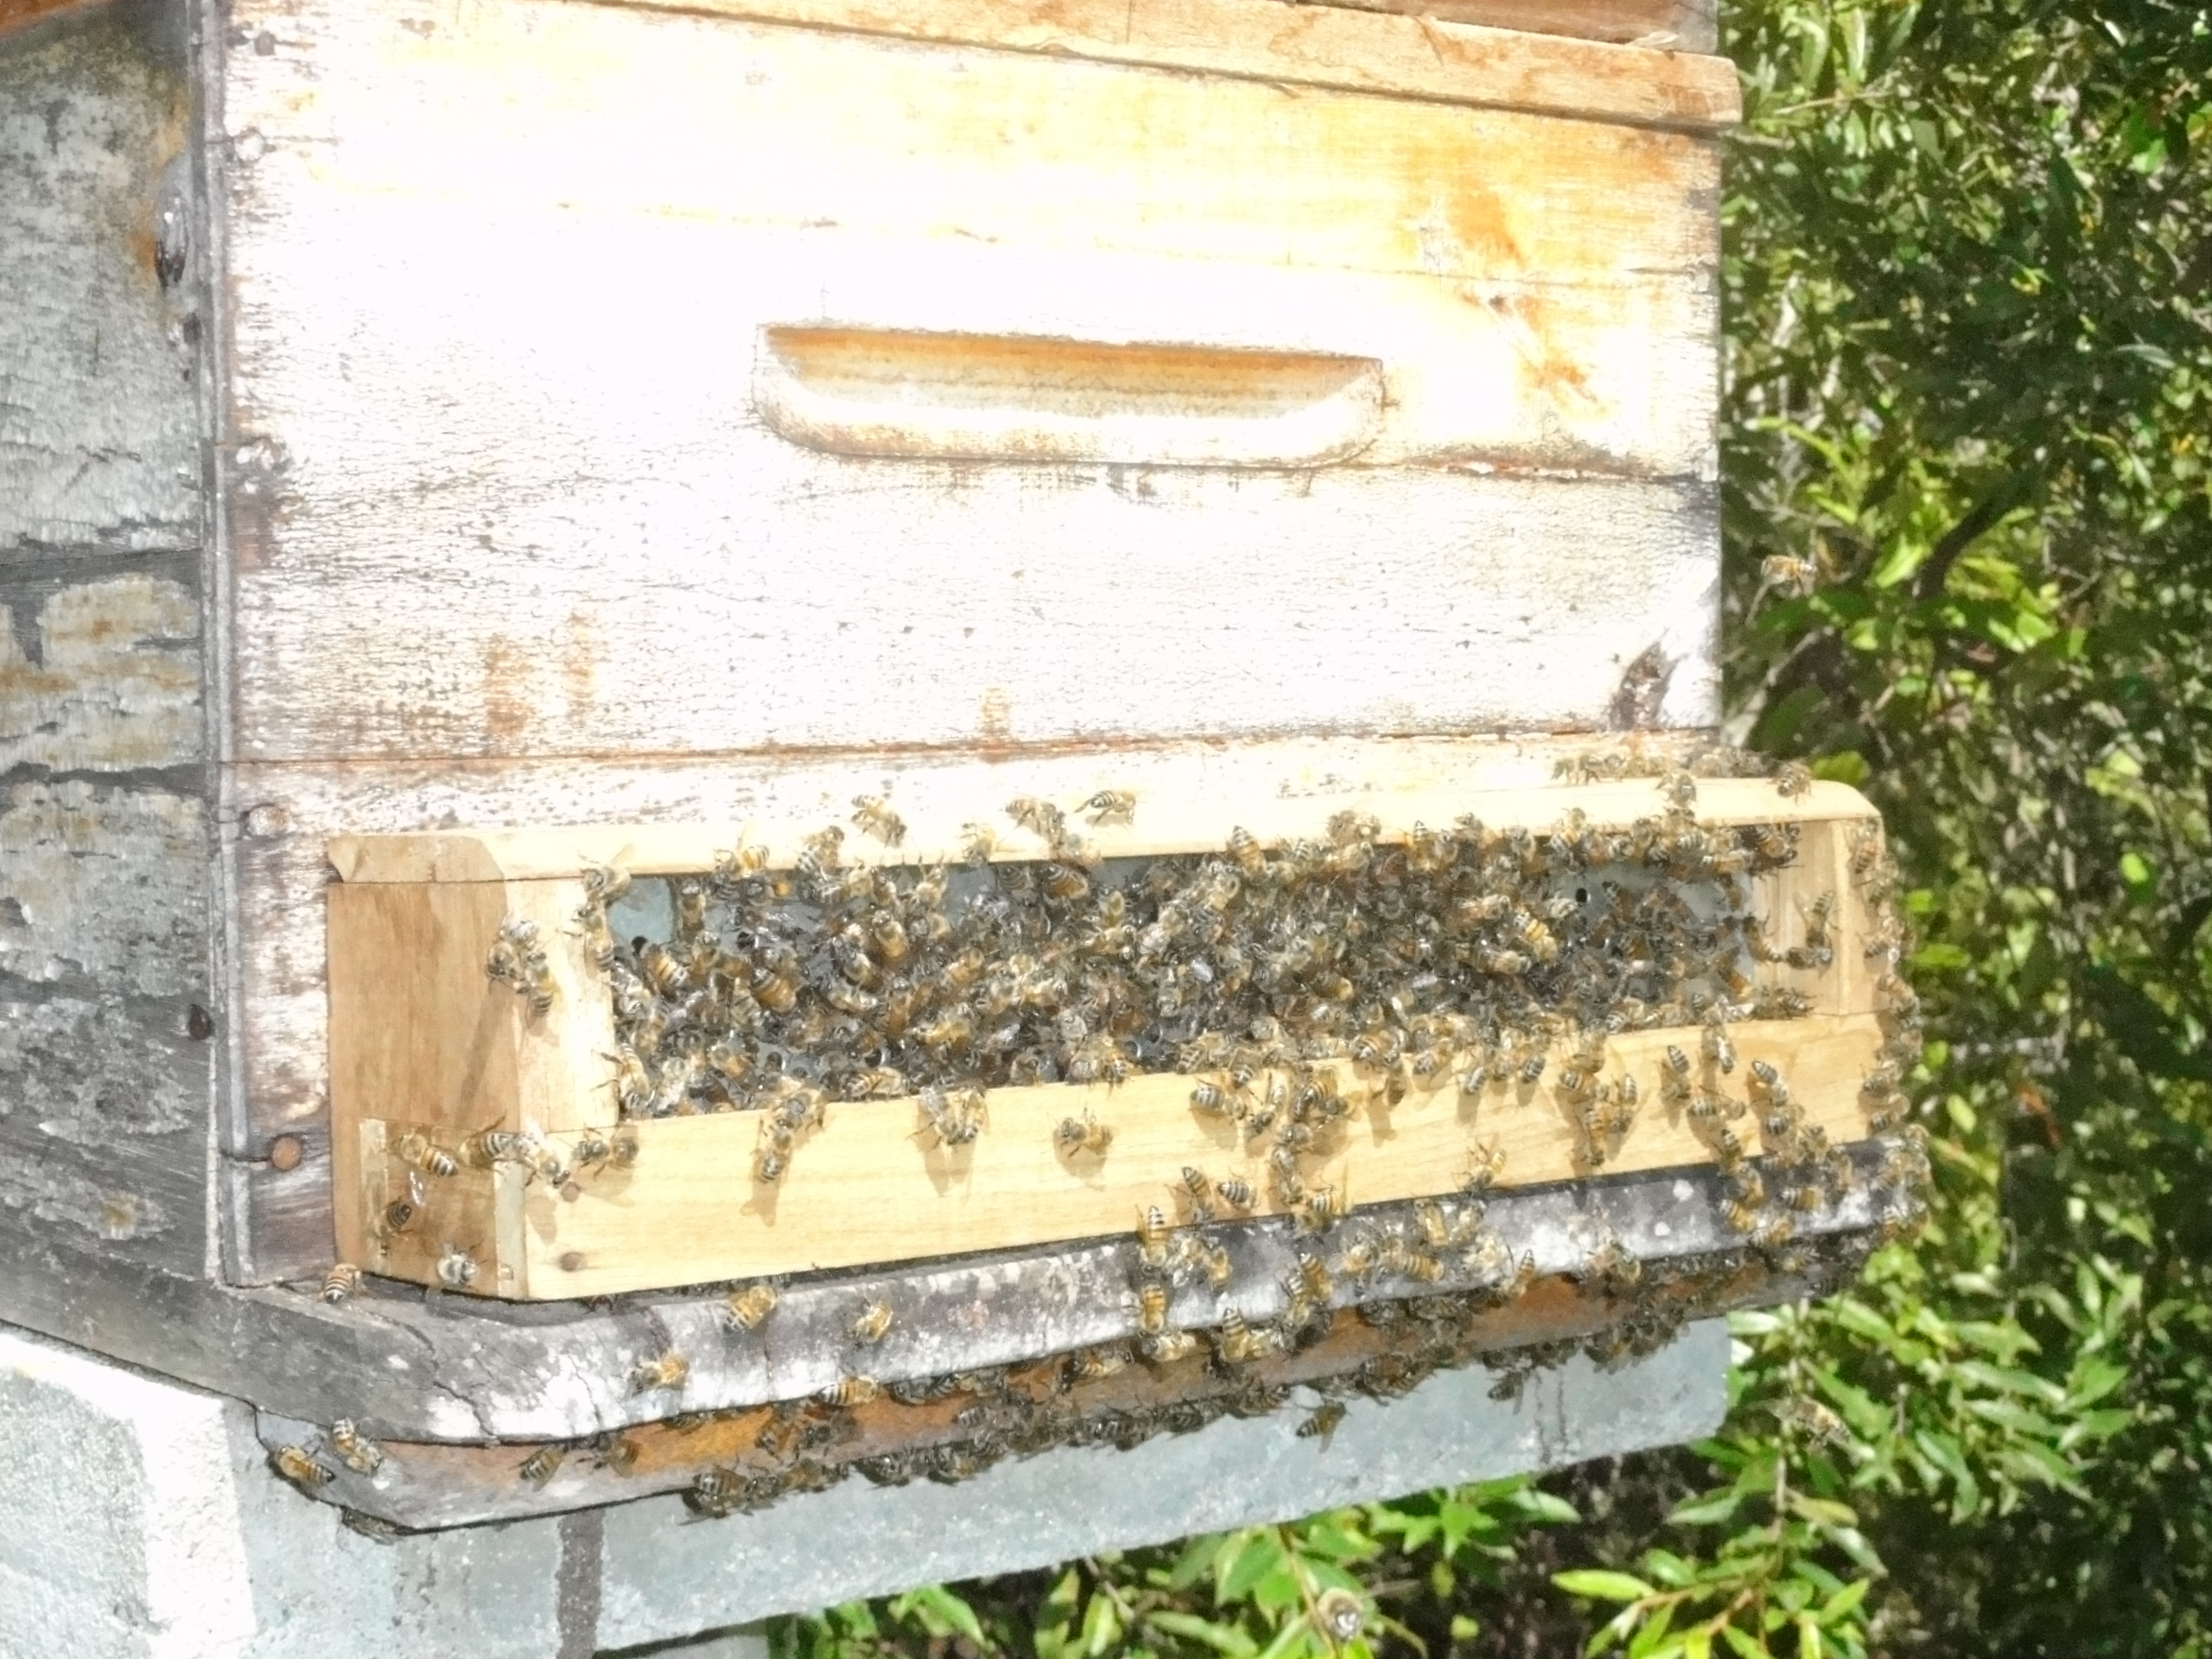 20120119 Fazenda coleta pólen apicultura 001.jpg